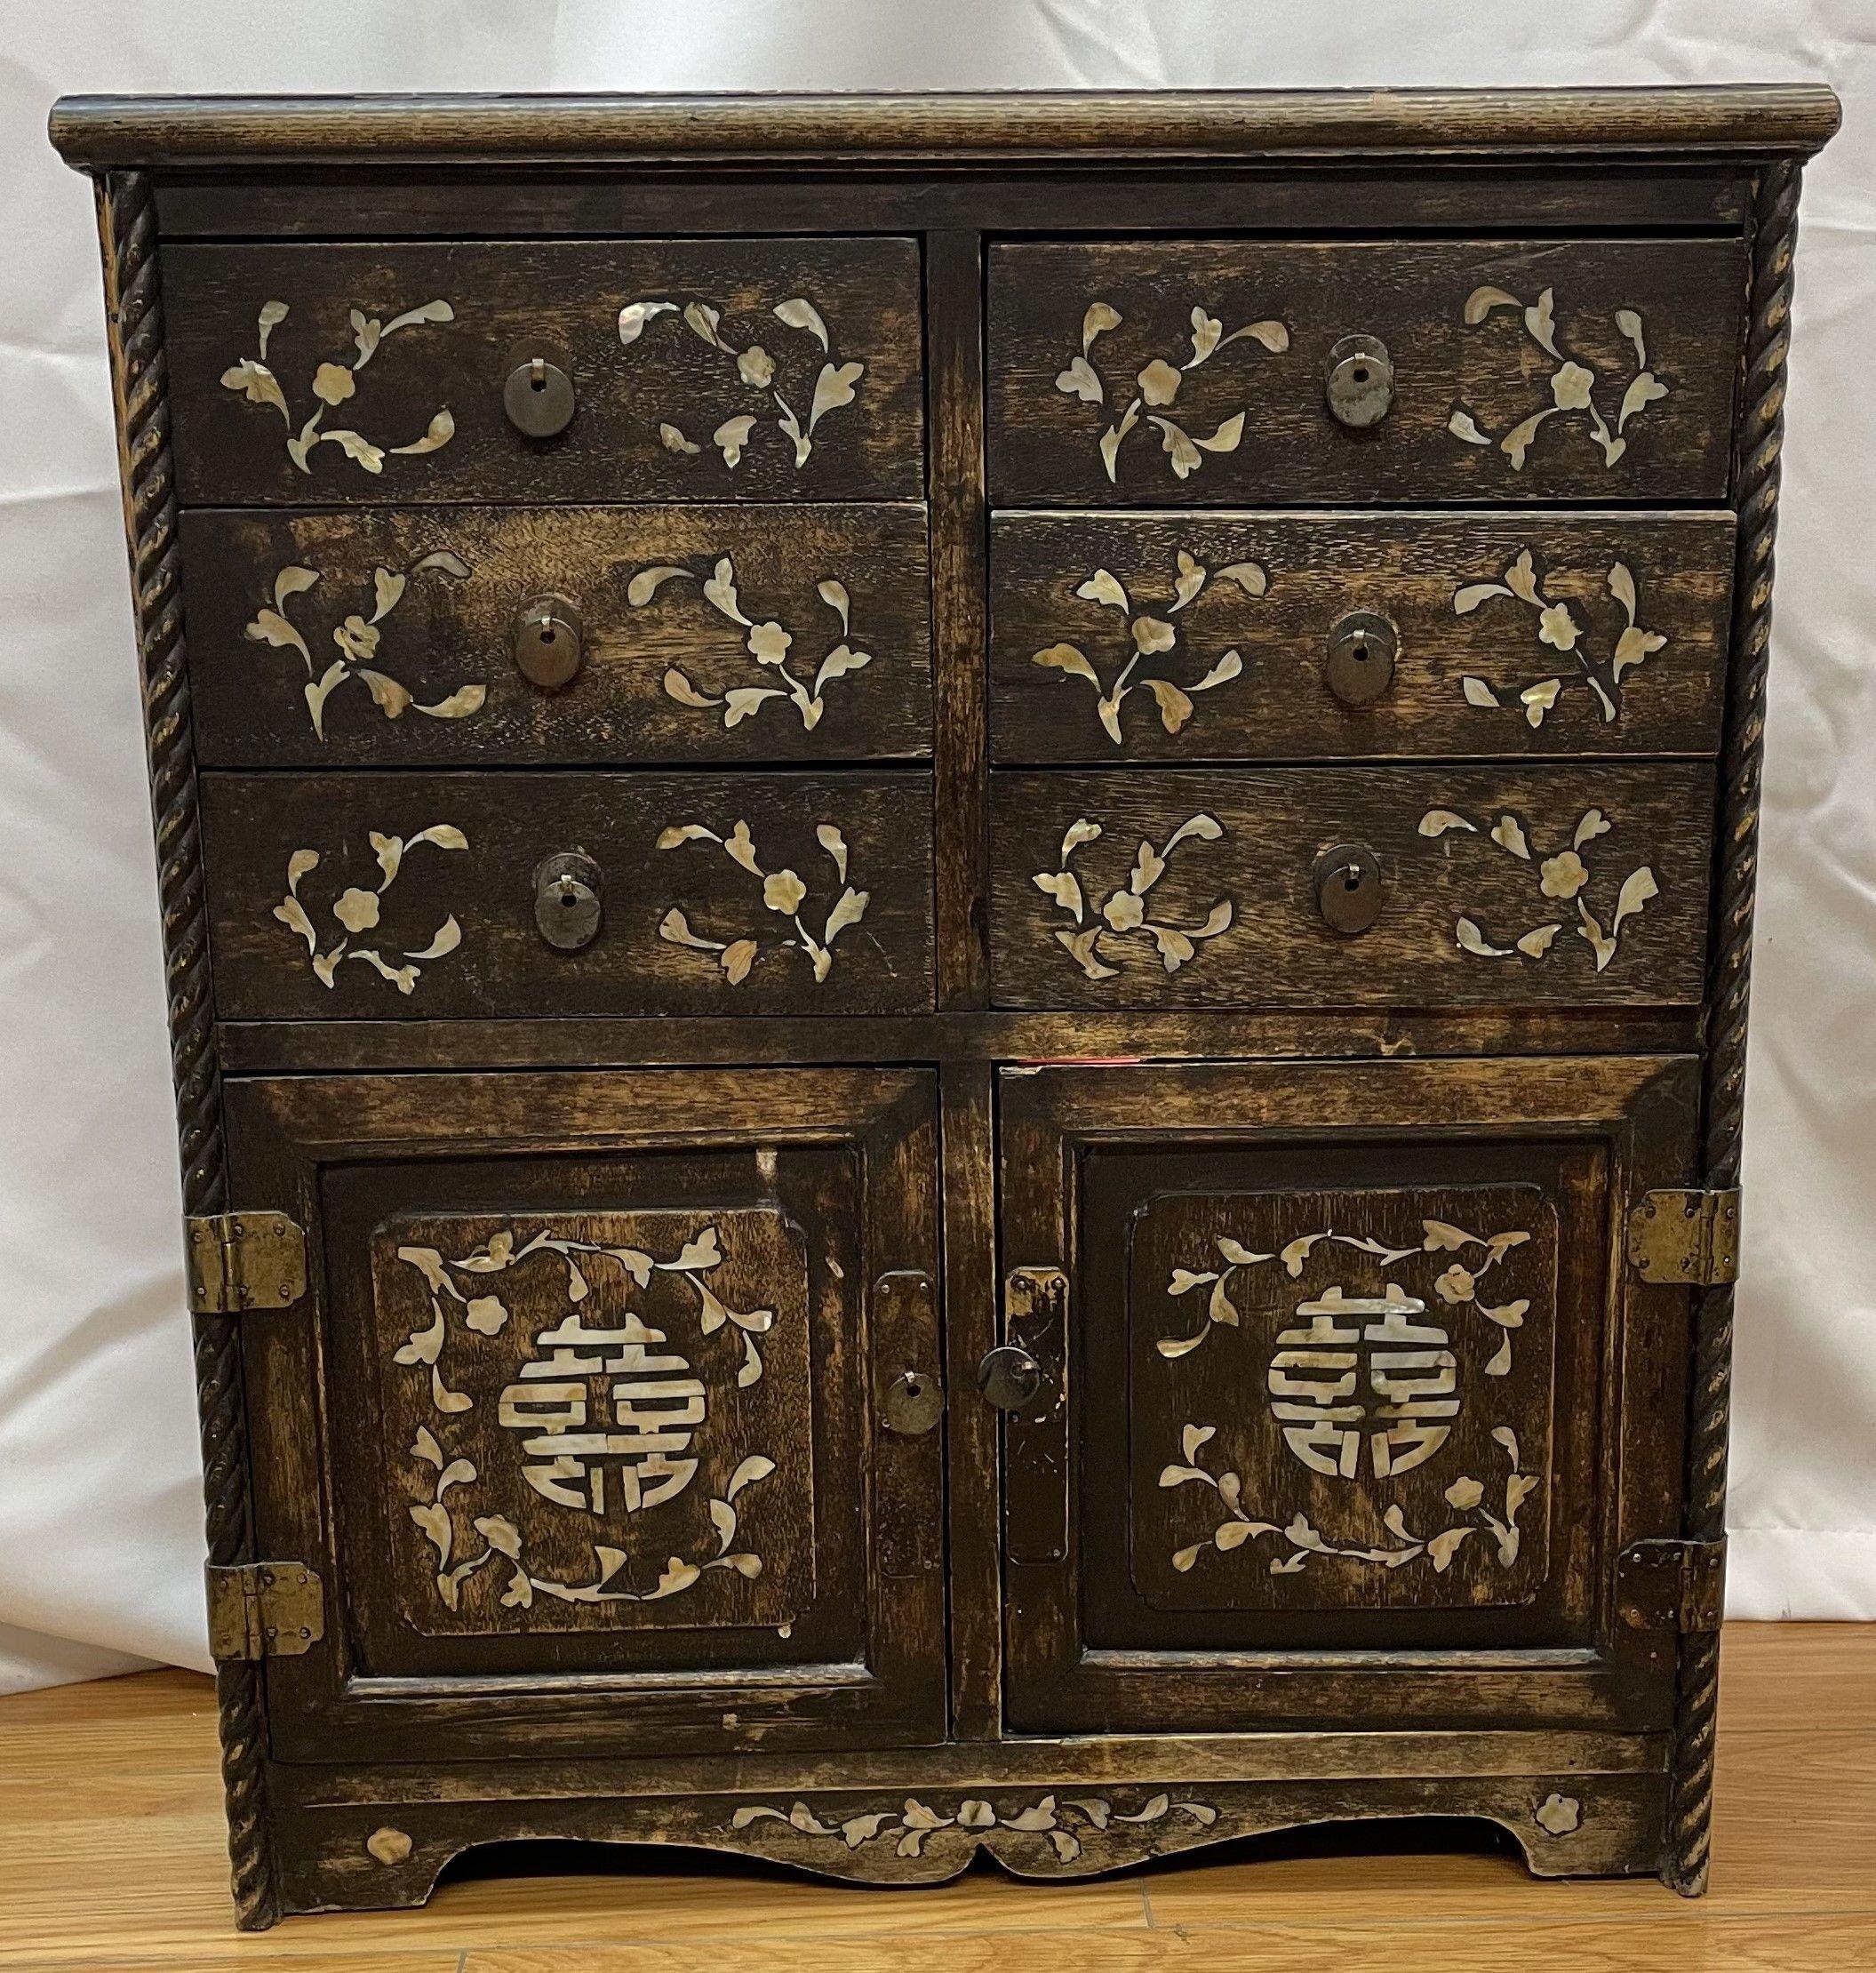 12-Schubladen-Schrank im asiatischen Stil mit Marmorintarsien in Decke und Seitenwänden

Ende 19. Jahrhundert 

20 x 8 x 22 